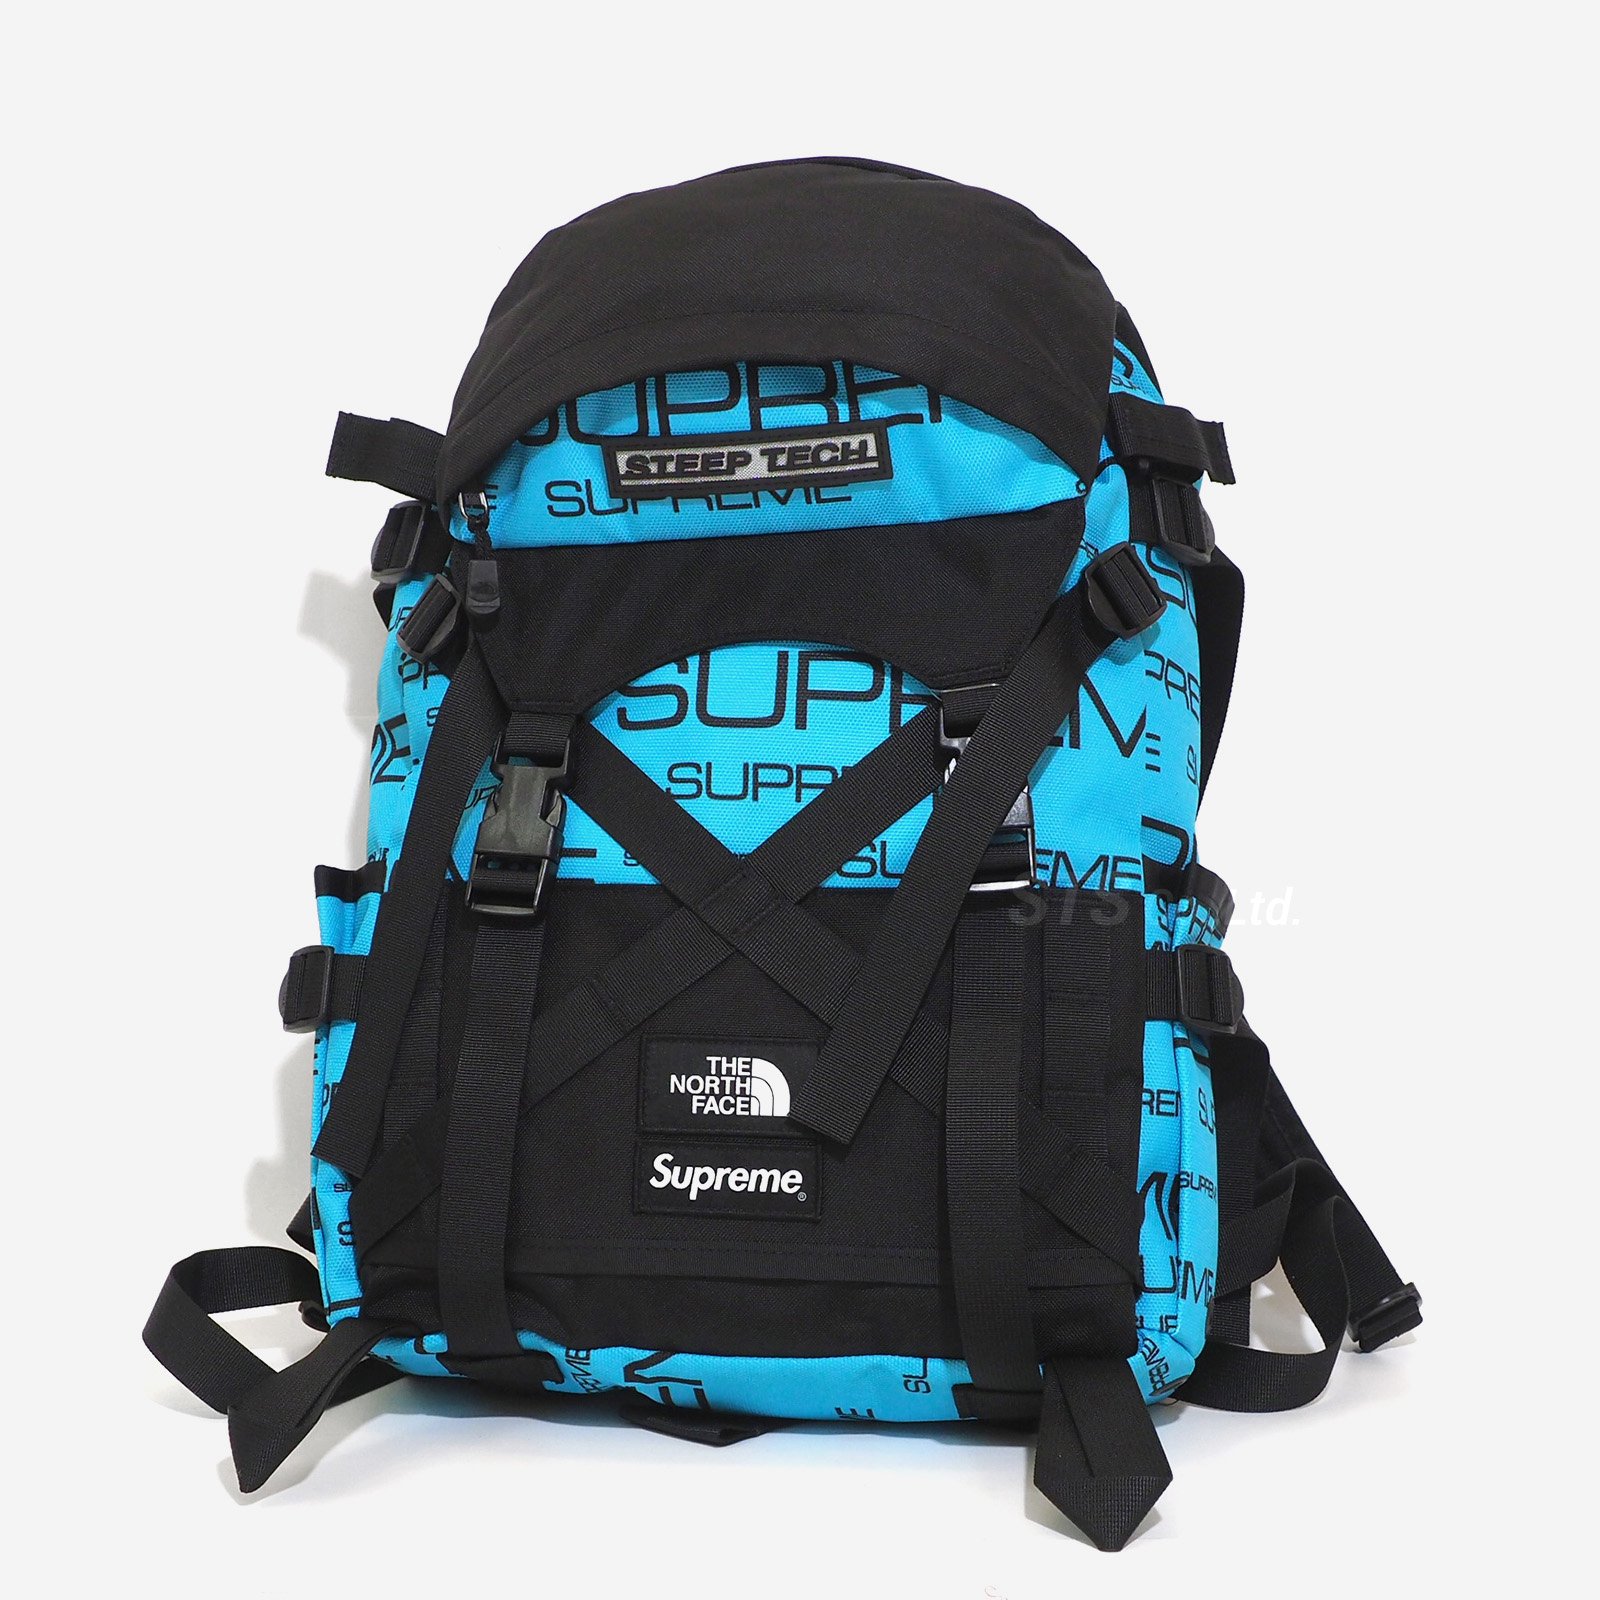 SupremeNorth Face stepteck backpack